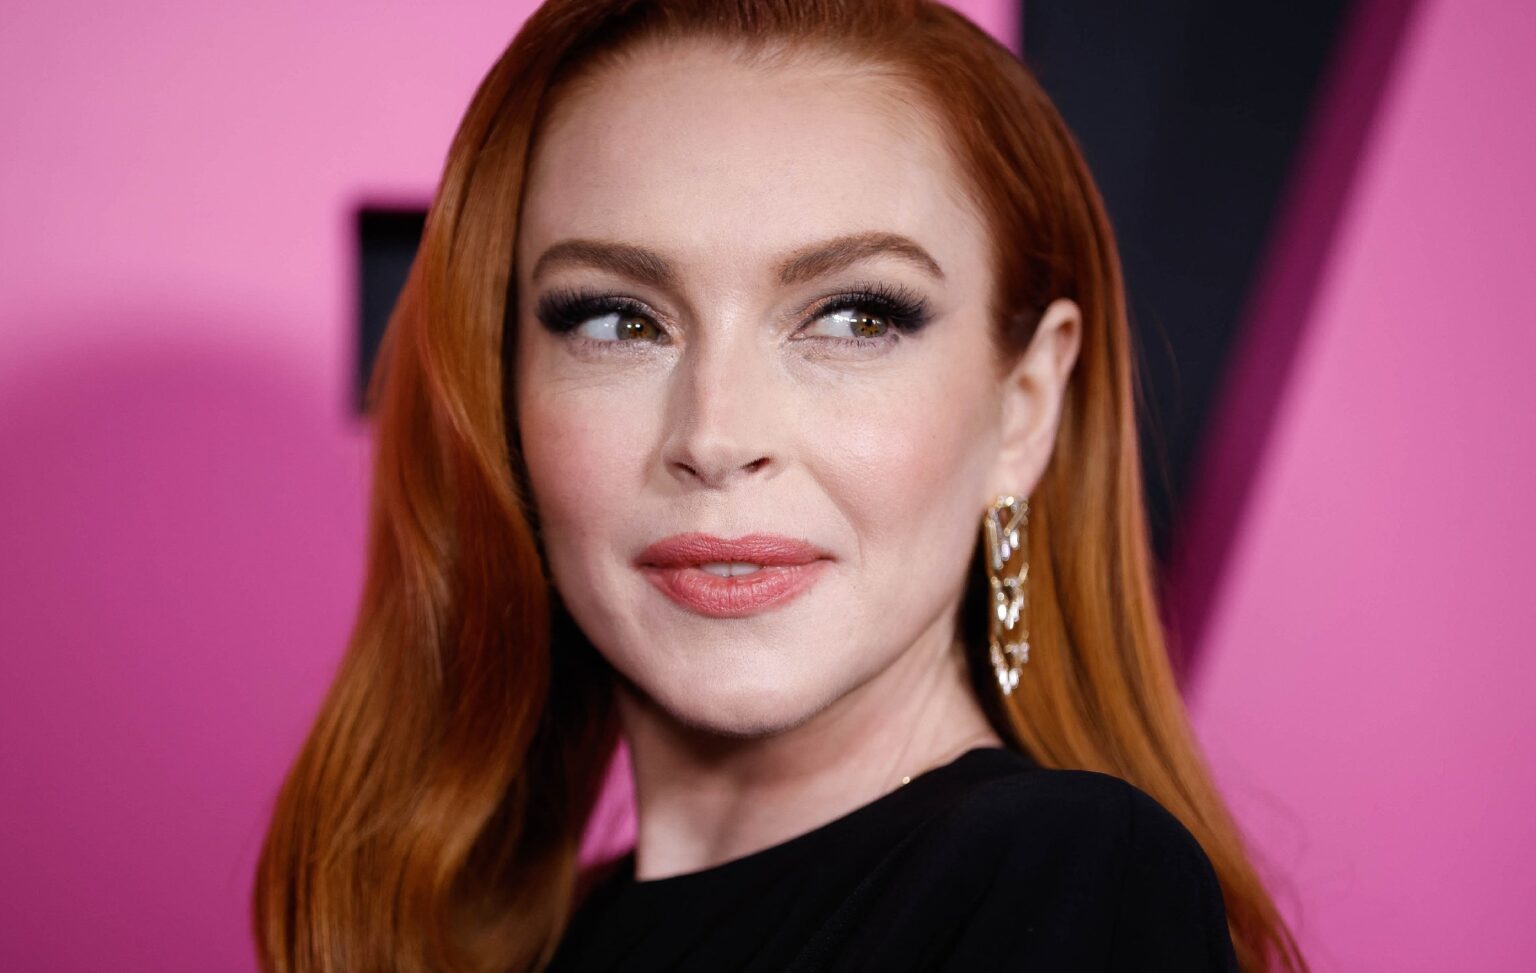 Lindsay Lohan “magoada e decepcionada” com piada no novo ‘Meninas Malvadas’